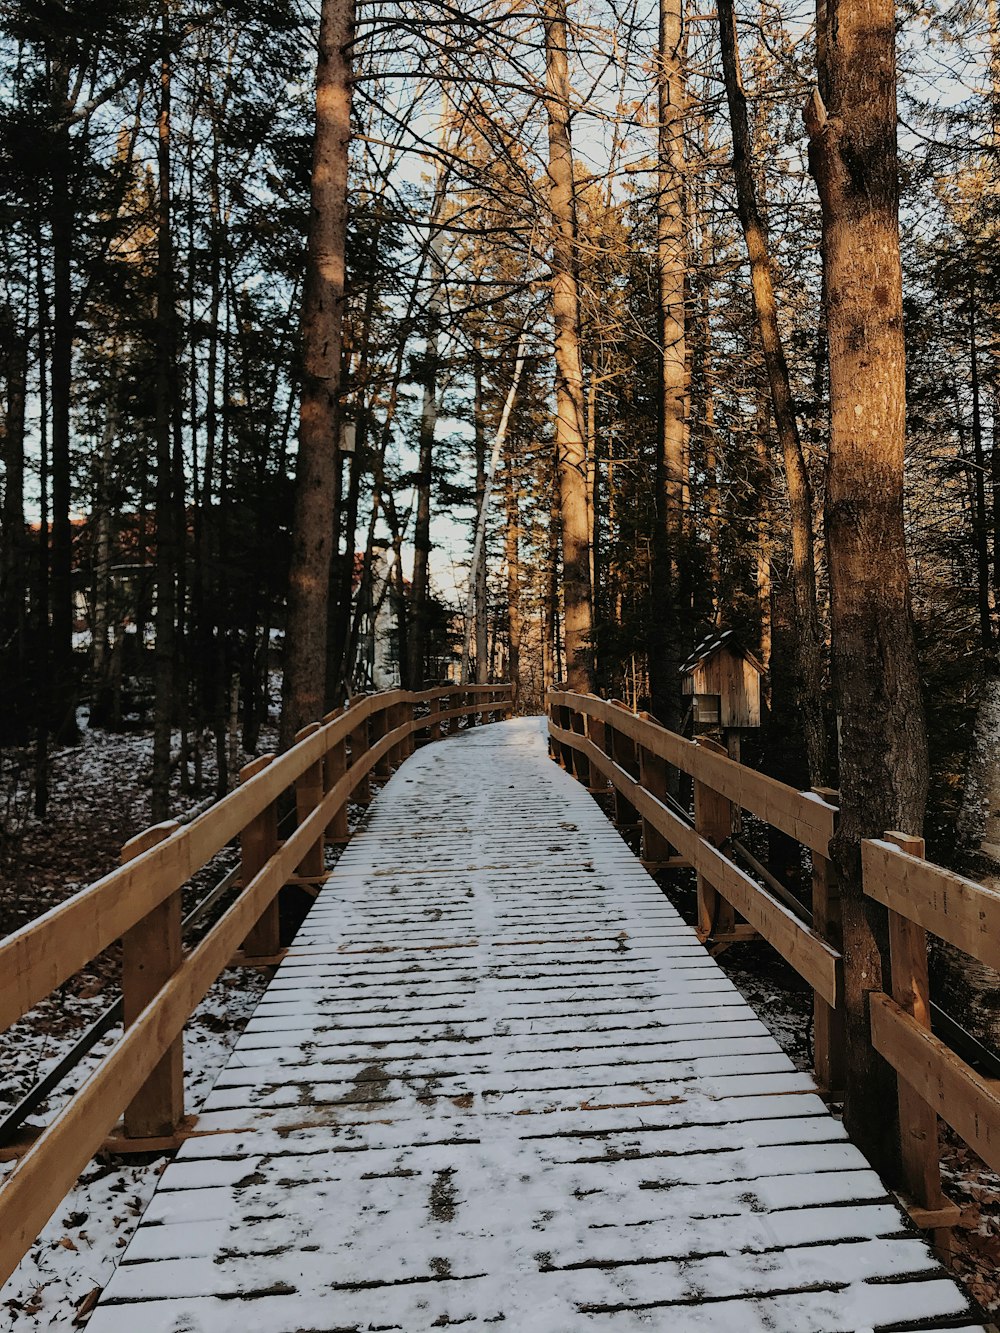 ponte de madeira marrom coberta de neve entre as árvores